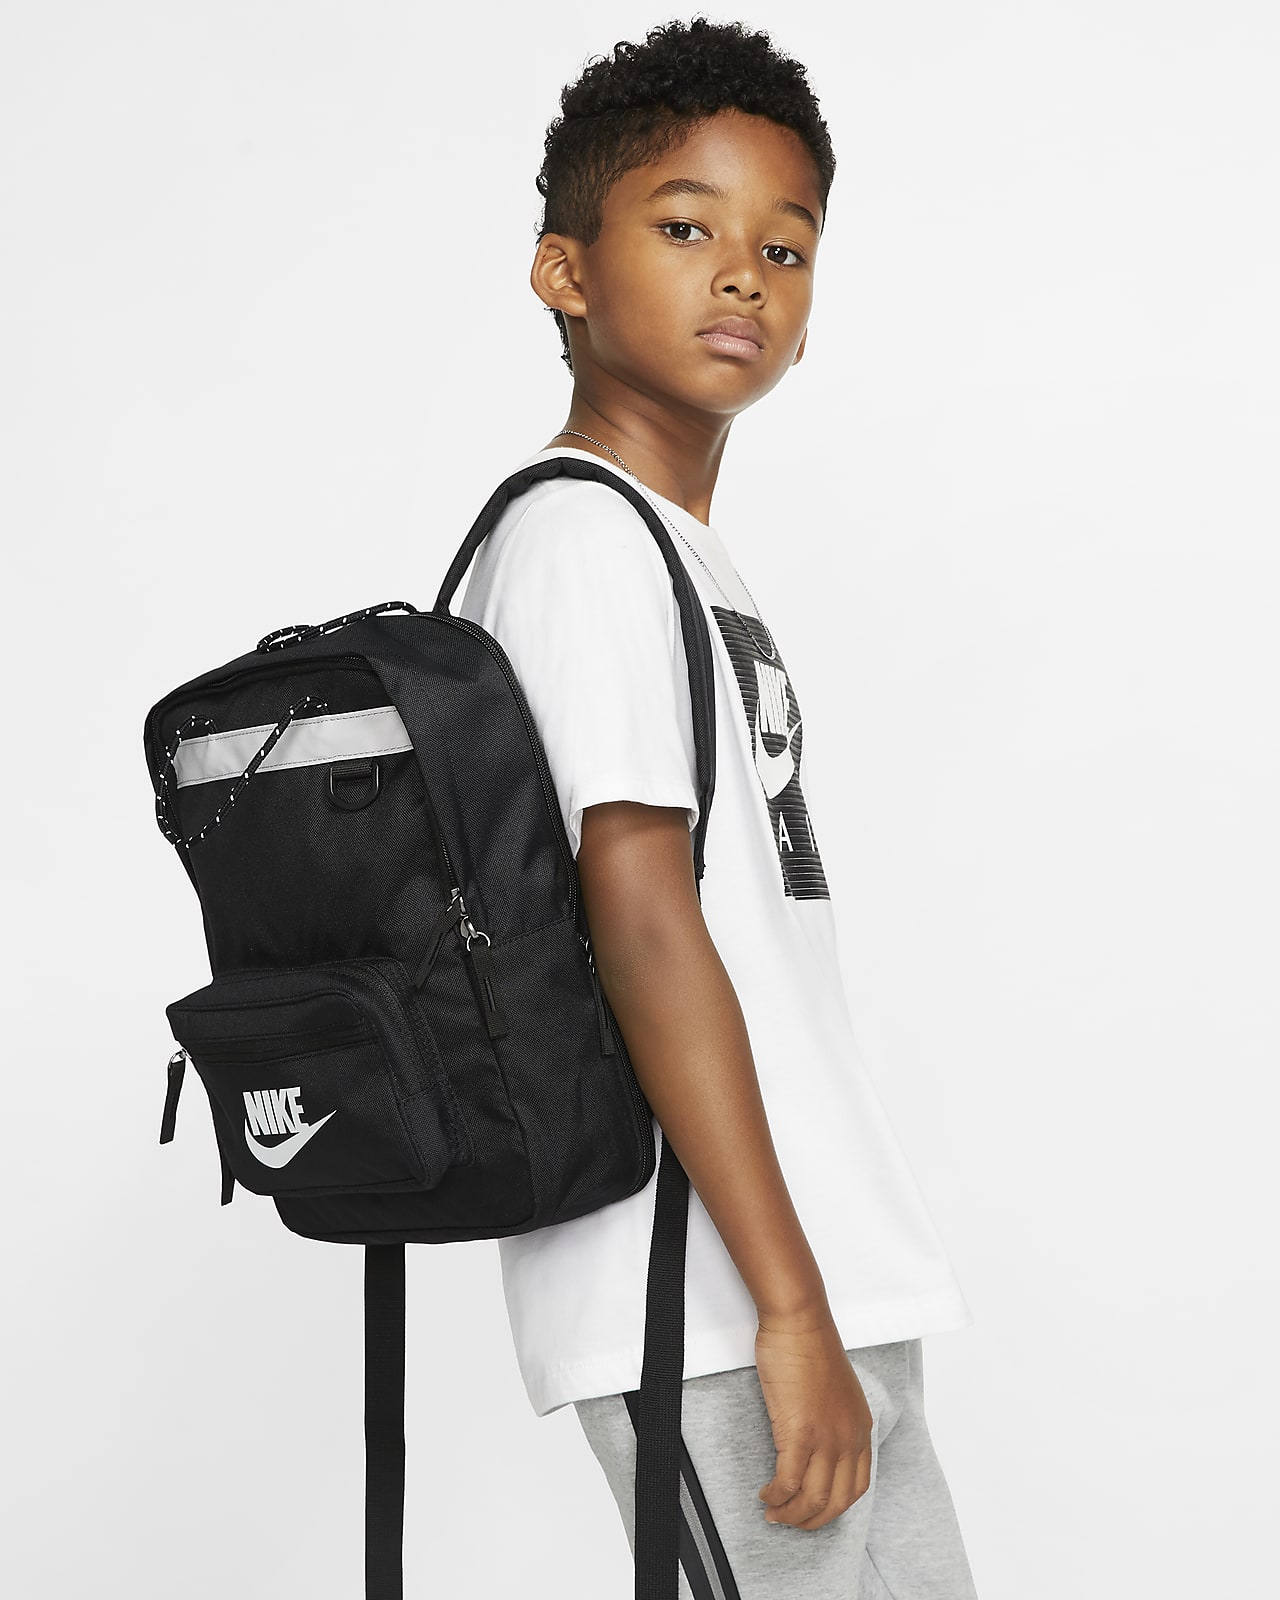 Grifo Egomanía camuflaje Nike Tanjun Kids' Backpack. (11L). Nike.com